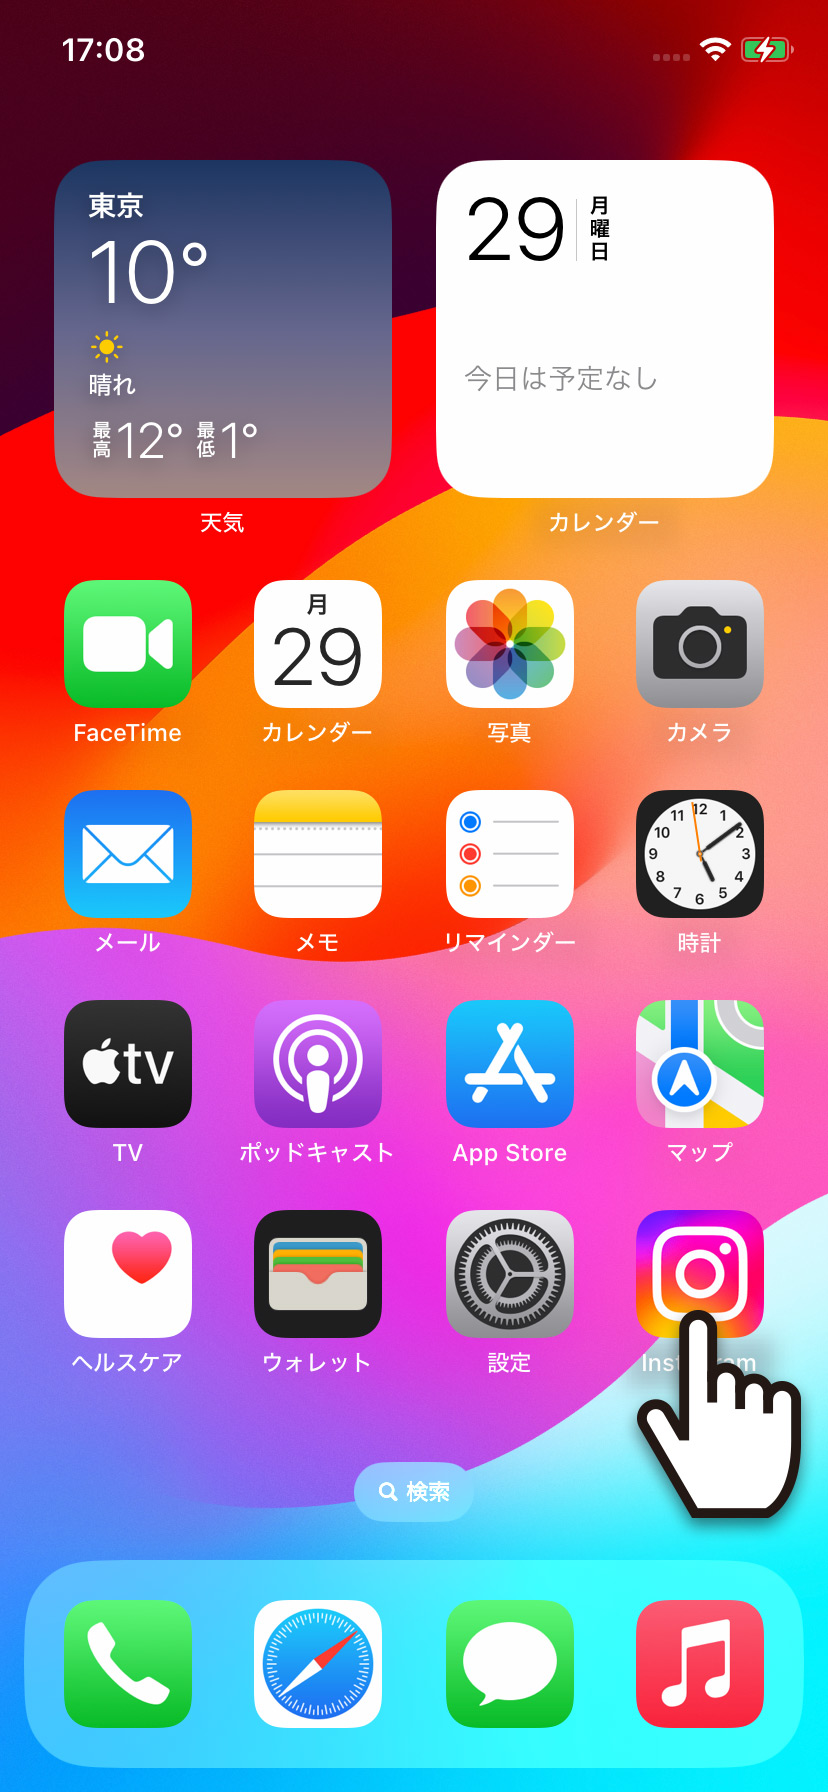 【iPhone】Instagram(インスタグラム)アプリからURLをコピーしてブラウザで開く